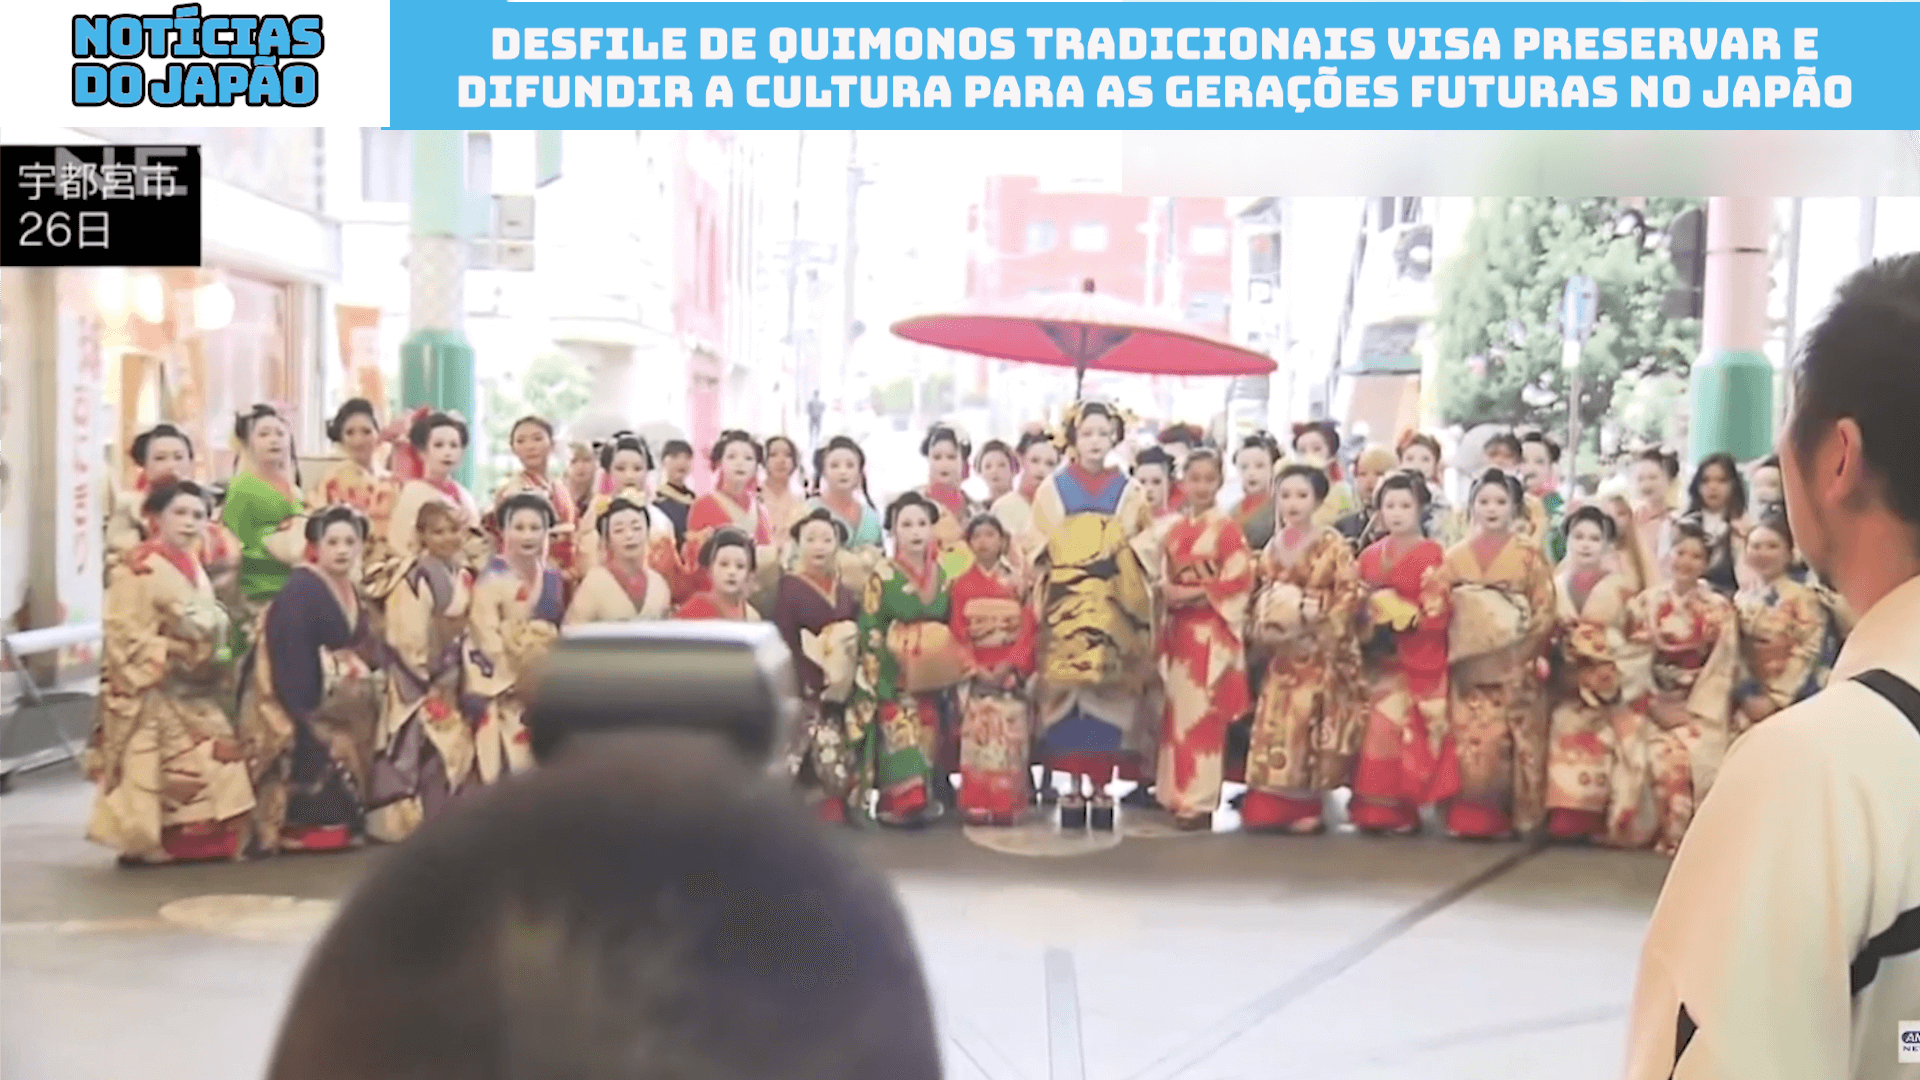 Desfile de quimonos tradicionais visa preservar e difundir a cultura para as gerações futuras no Japão 